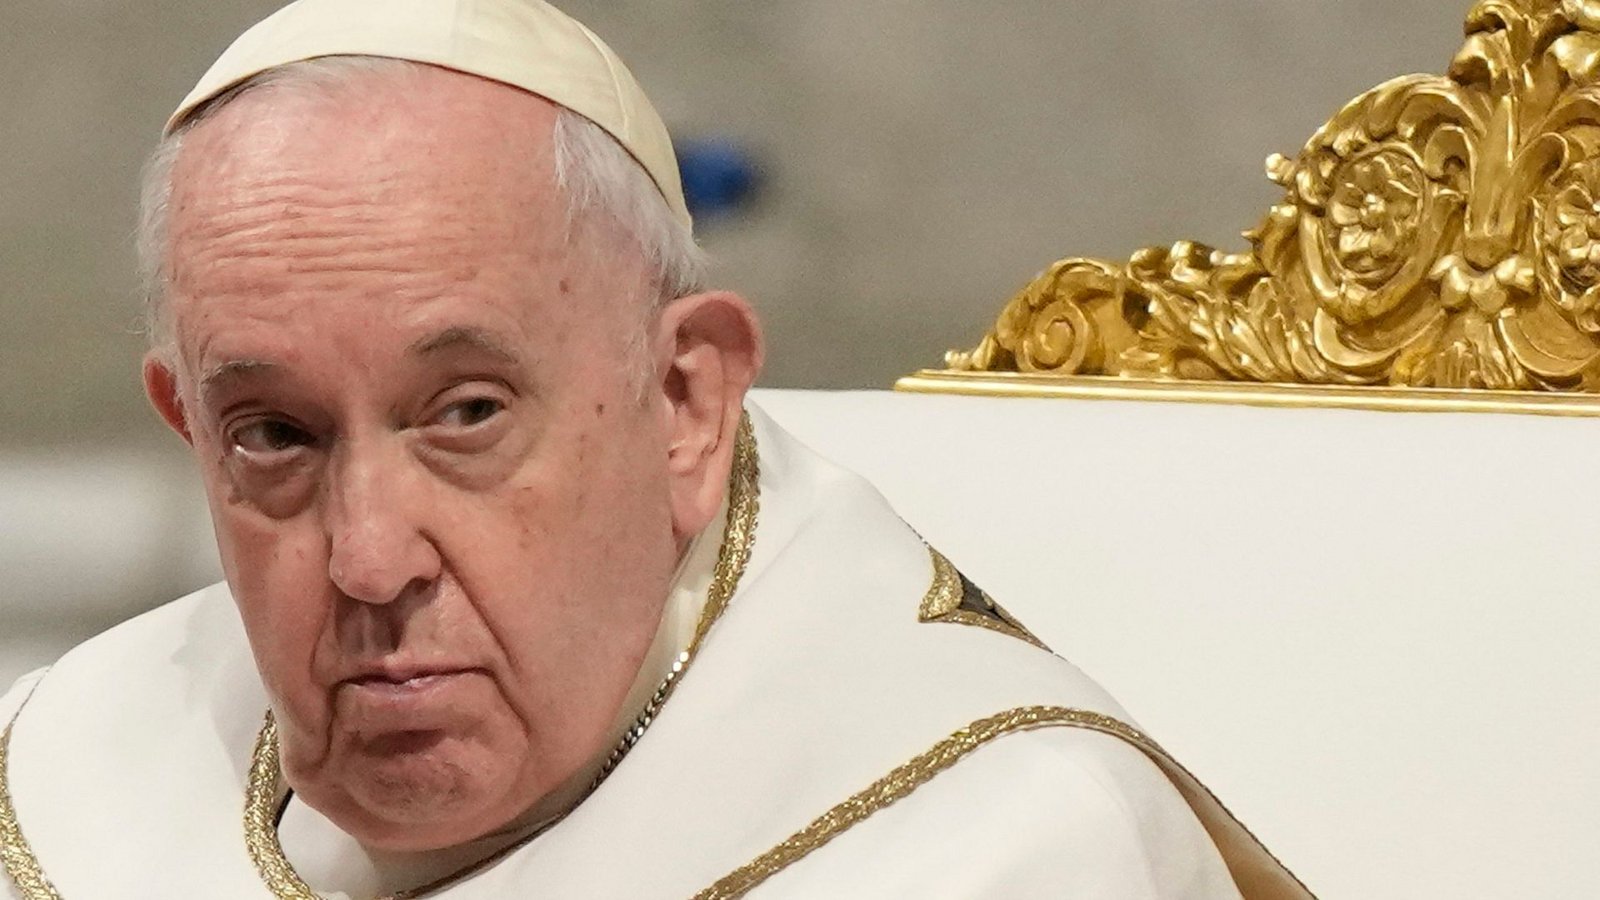 Papst Franziskus: "Und ich sage jedem, der Homosexualität kriminalisieren möchte, dass er falsch liegt".Foto: Andrew Medichini/AP/dpa